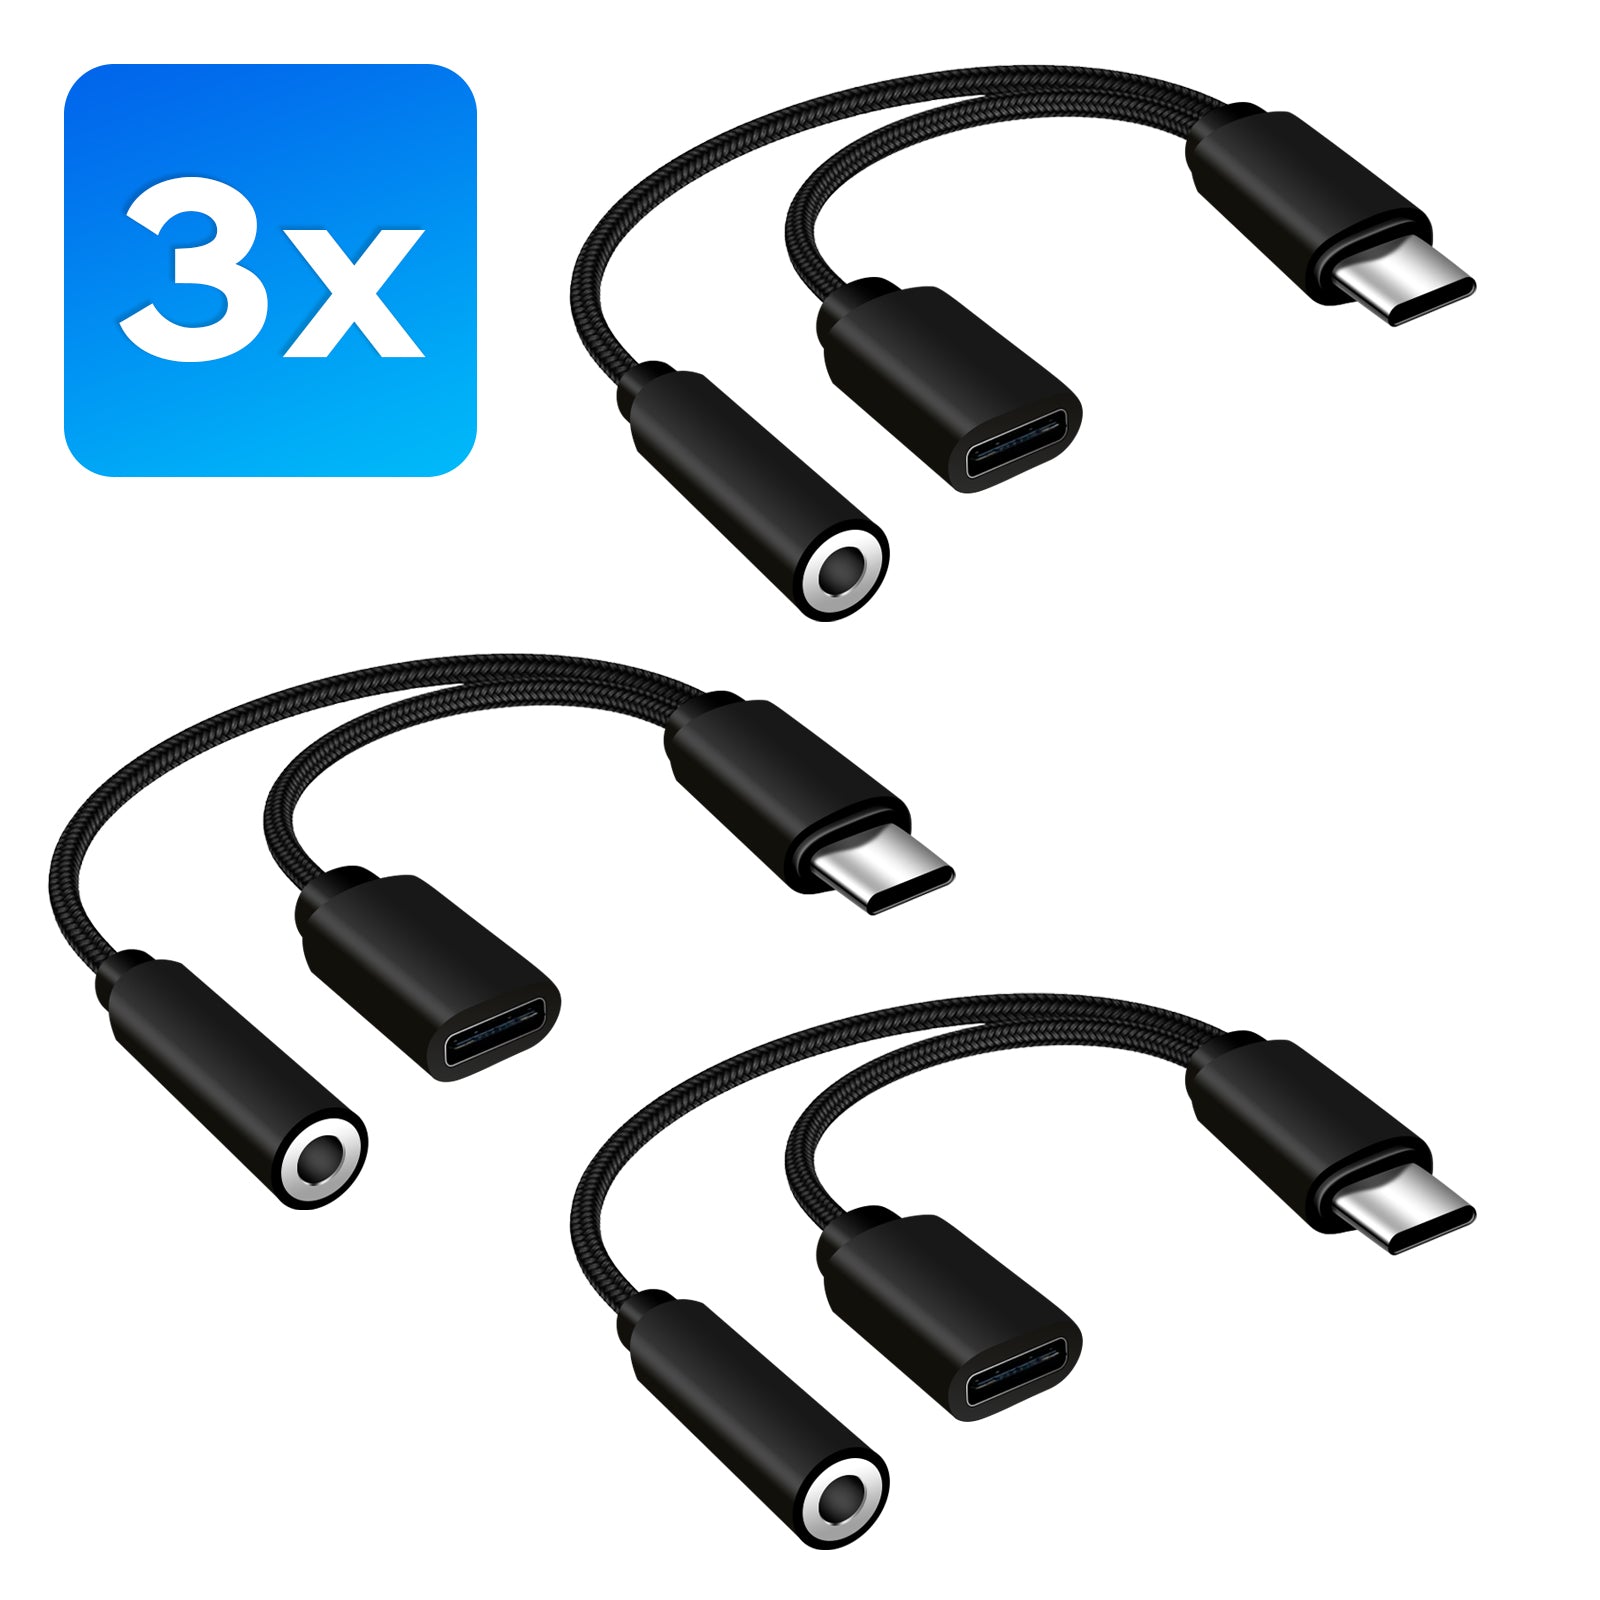 2 in 1 USB C auf 3,5 mm Klinke AUX Adapter Kopfhörer Audio Handy